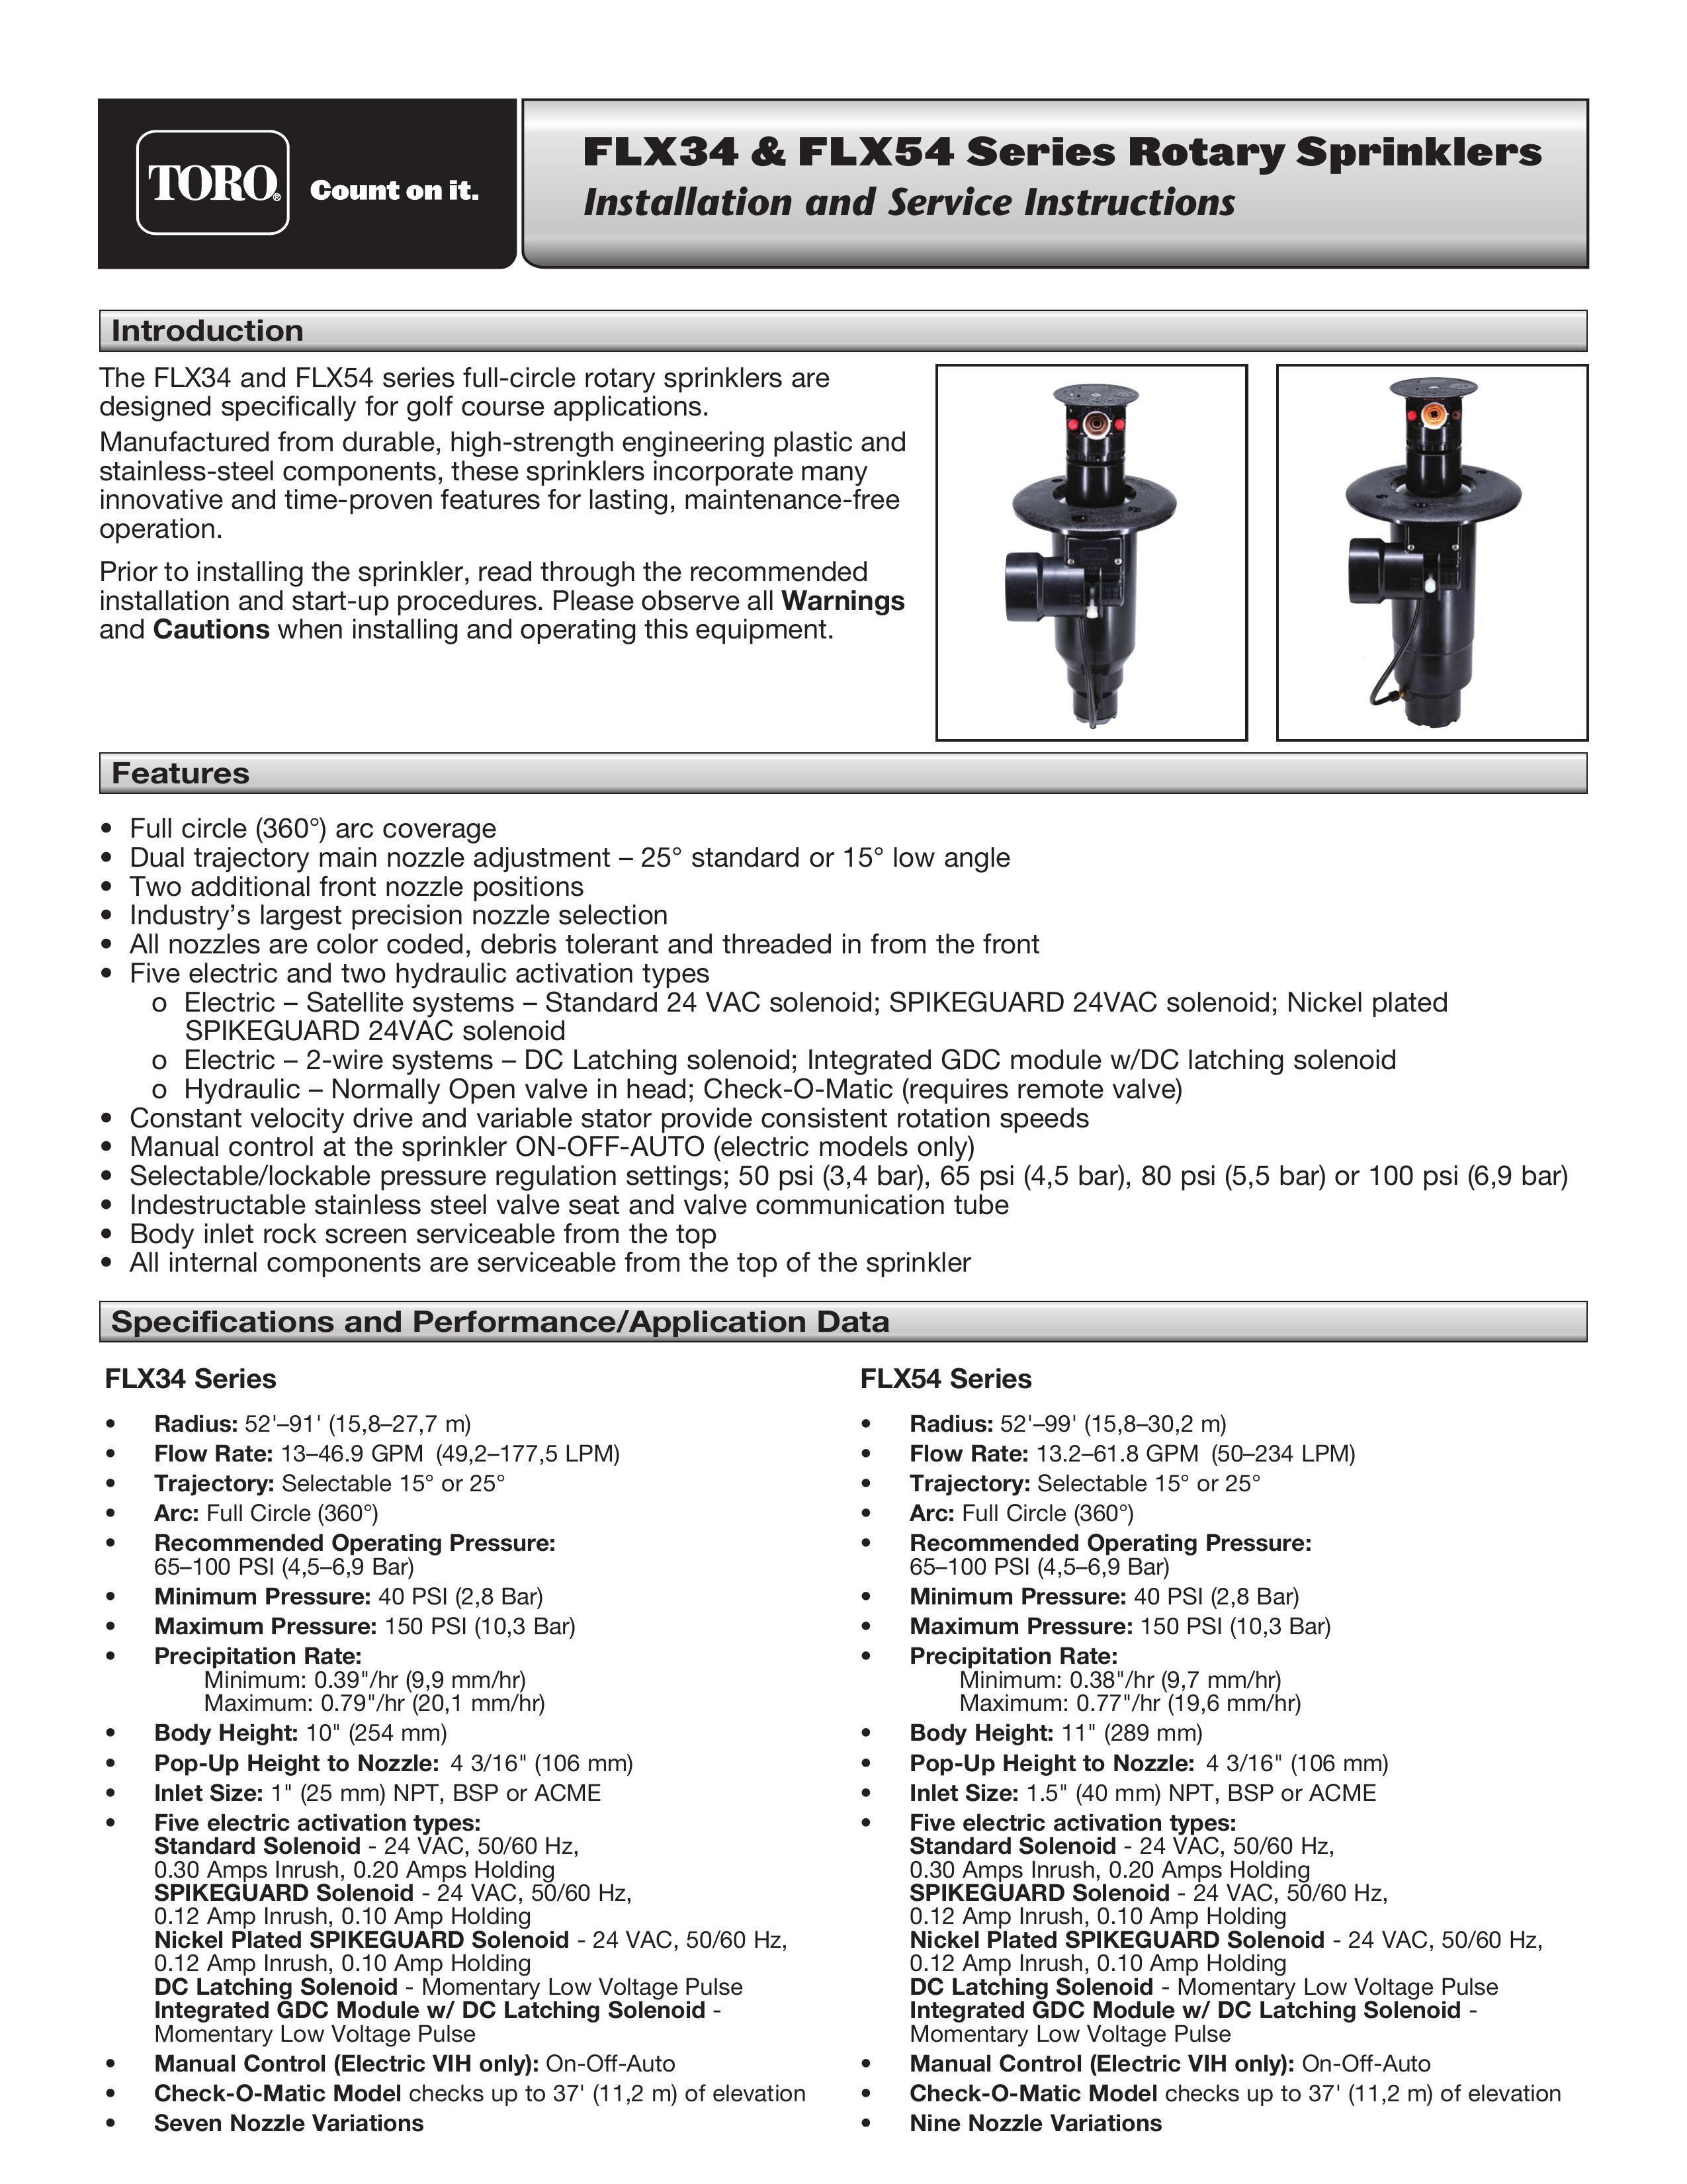 Toro FLX34 Sprinkler User Manual